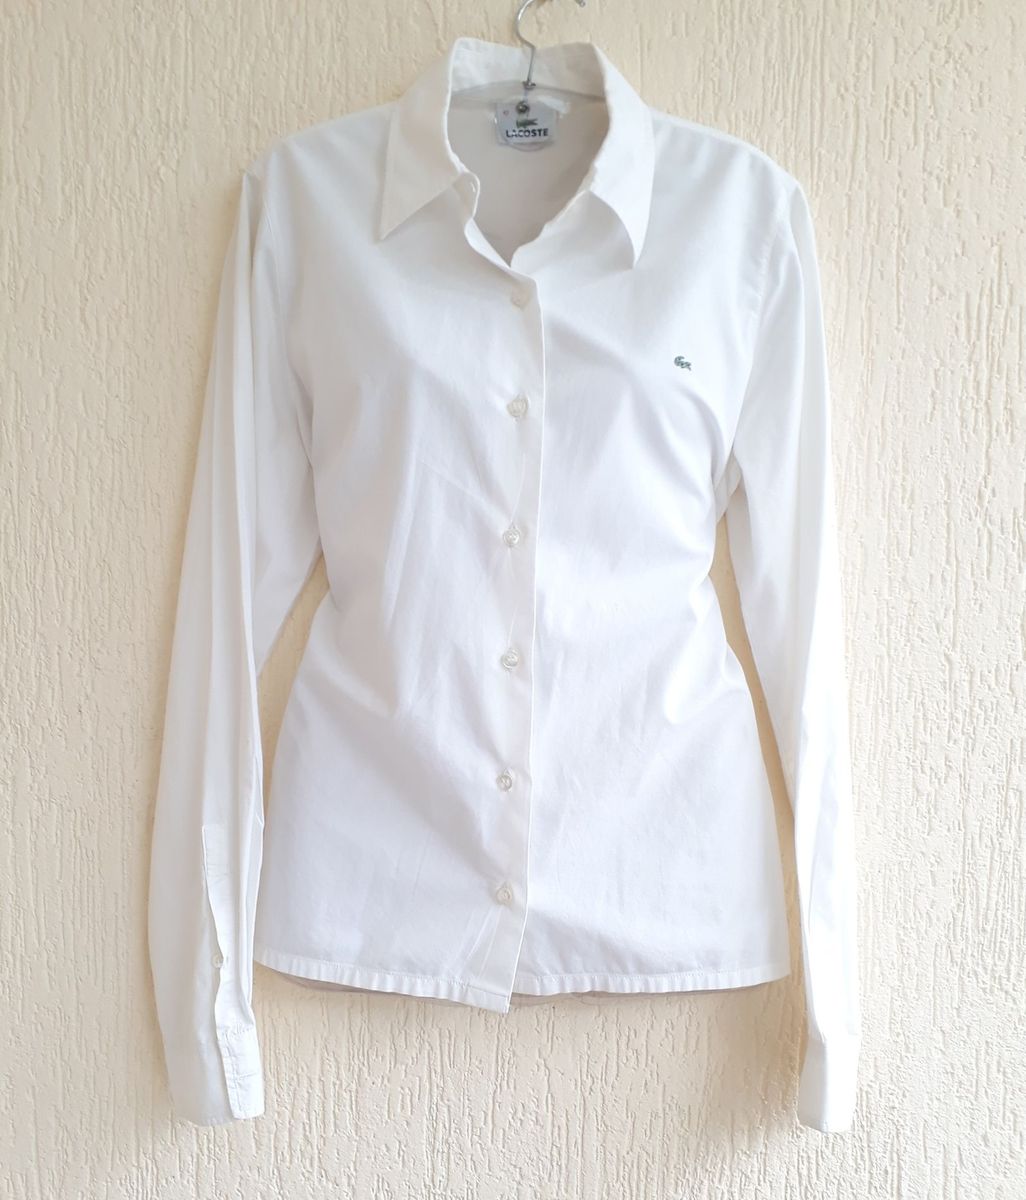 camisa social feminina branca manga longa